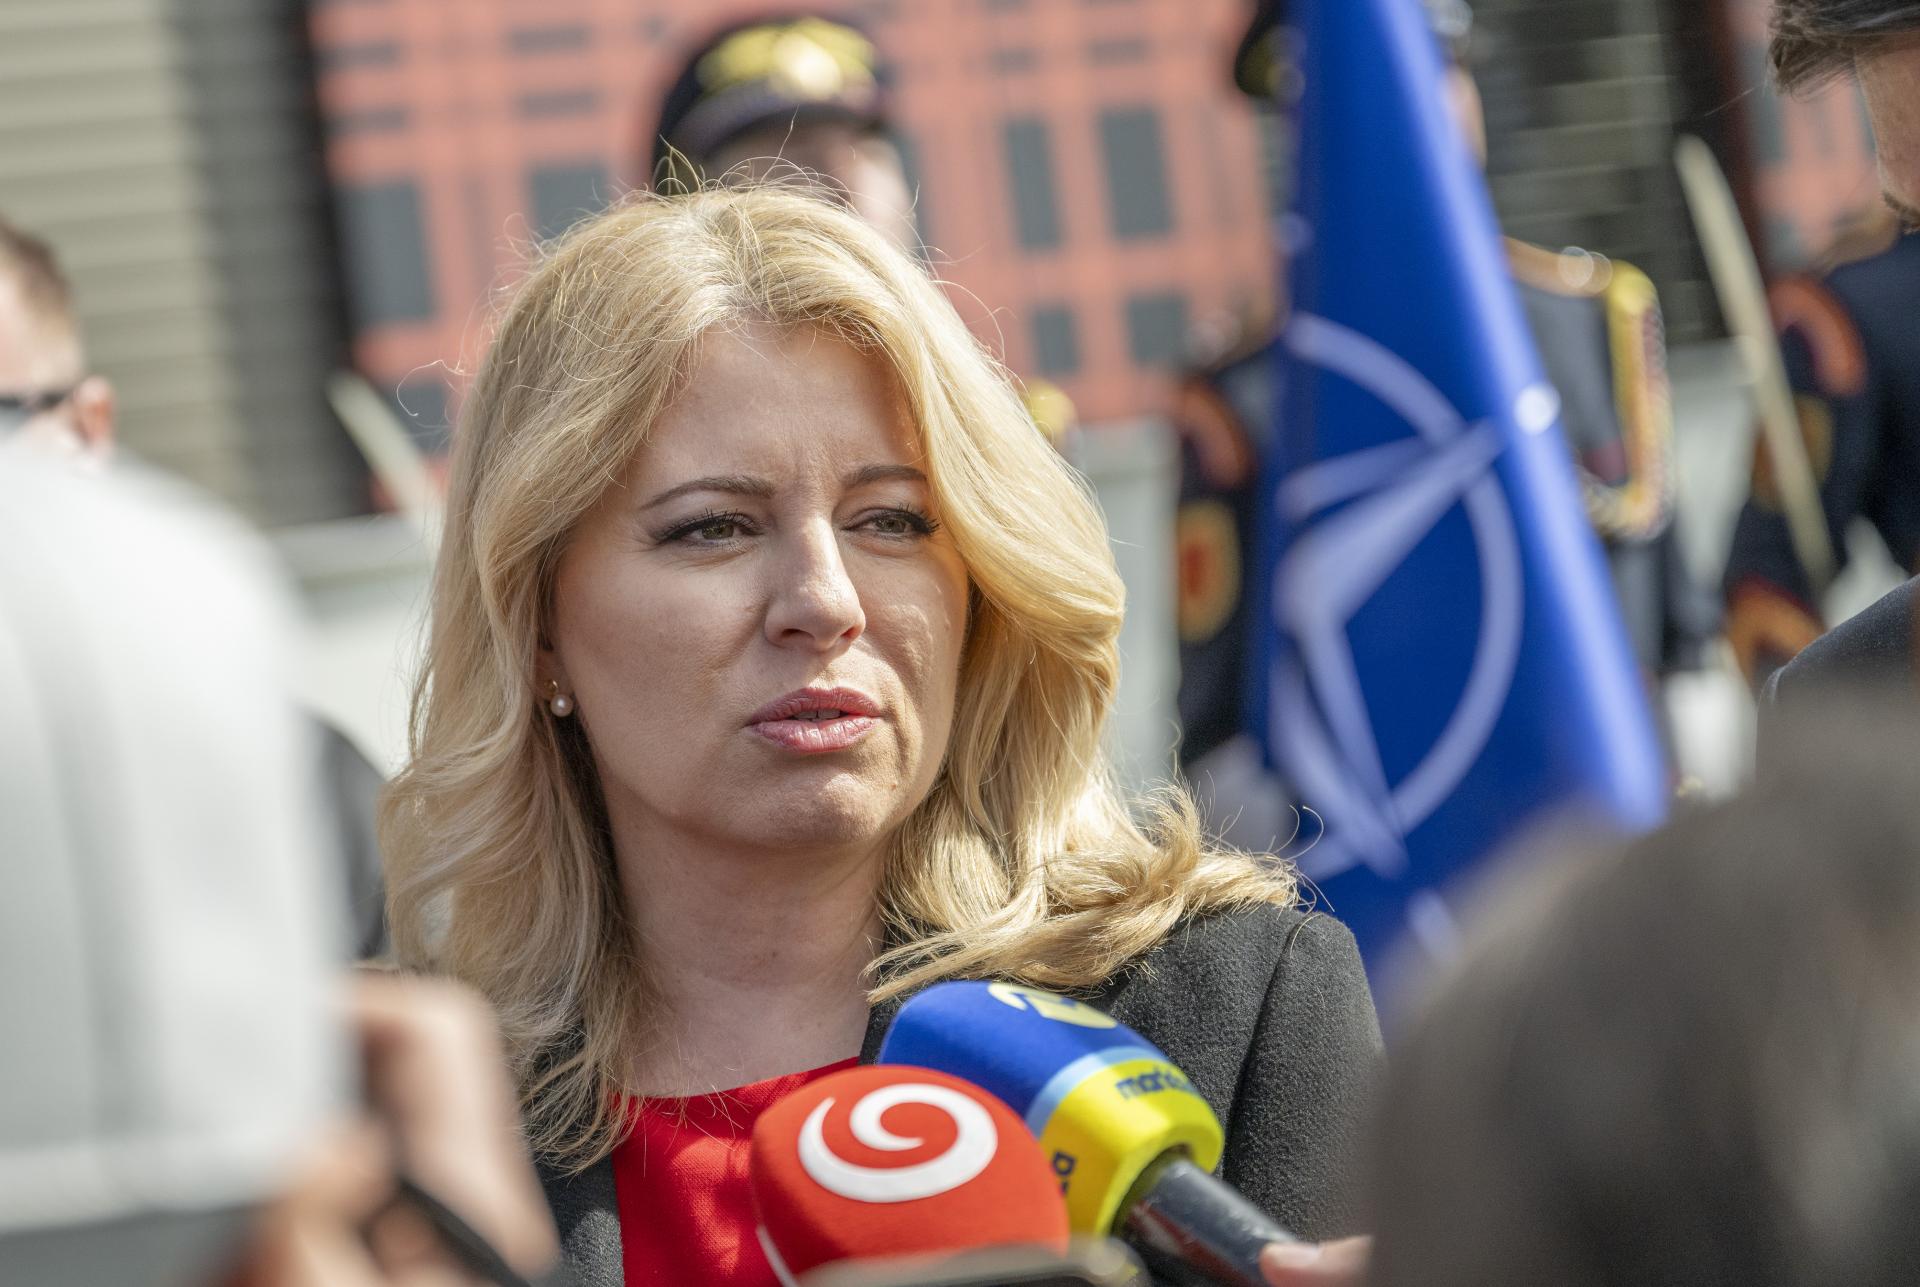 NATO aj po voľbách vníma Slovensko ako zodpovedného partnera, vyhlásila Čaputová